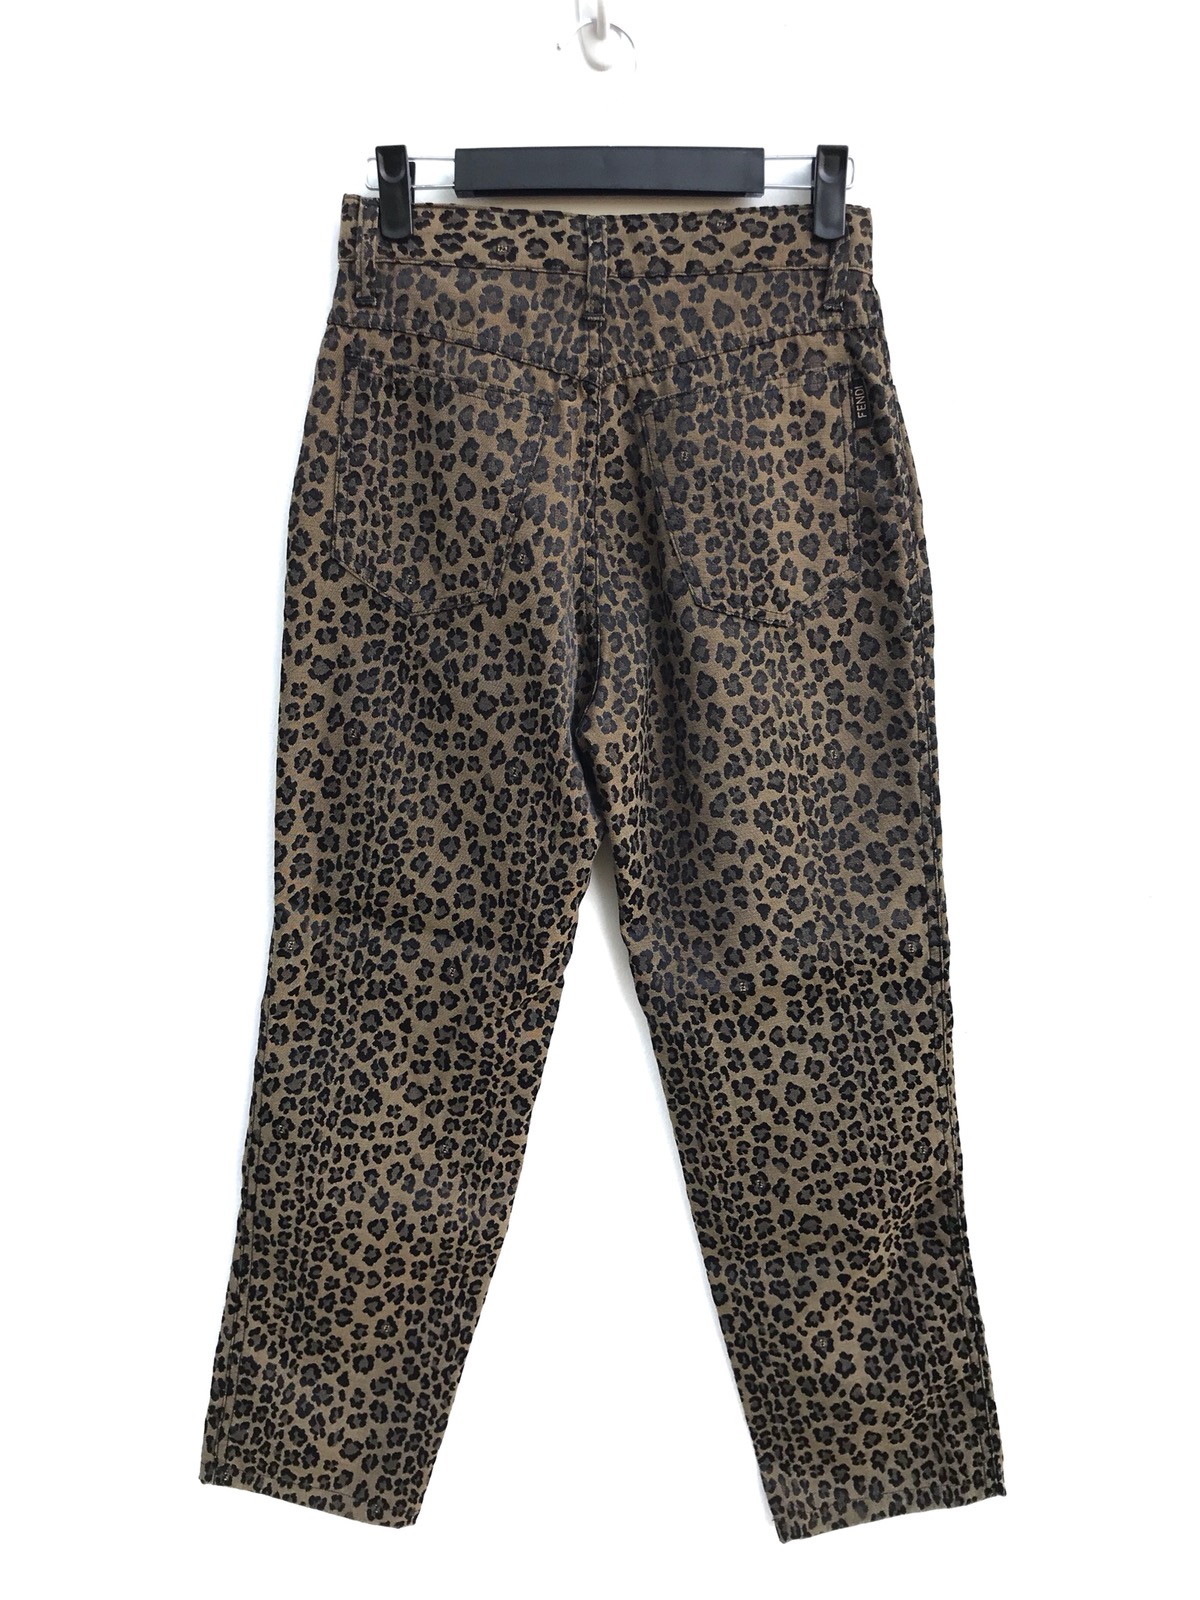 Authentic Fendi Leopard Print Trousers Pants - 3